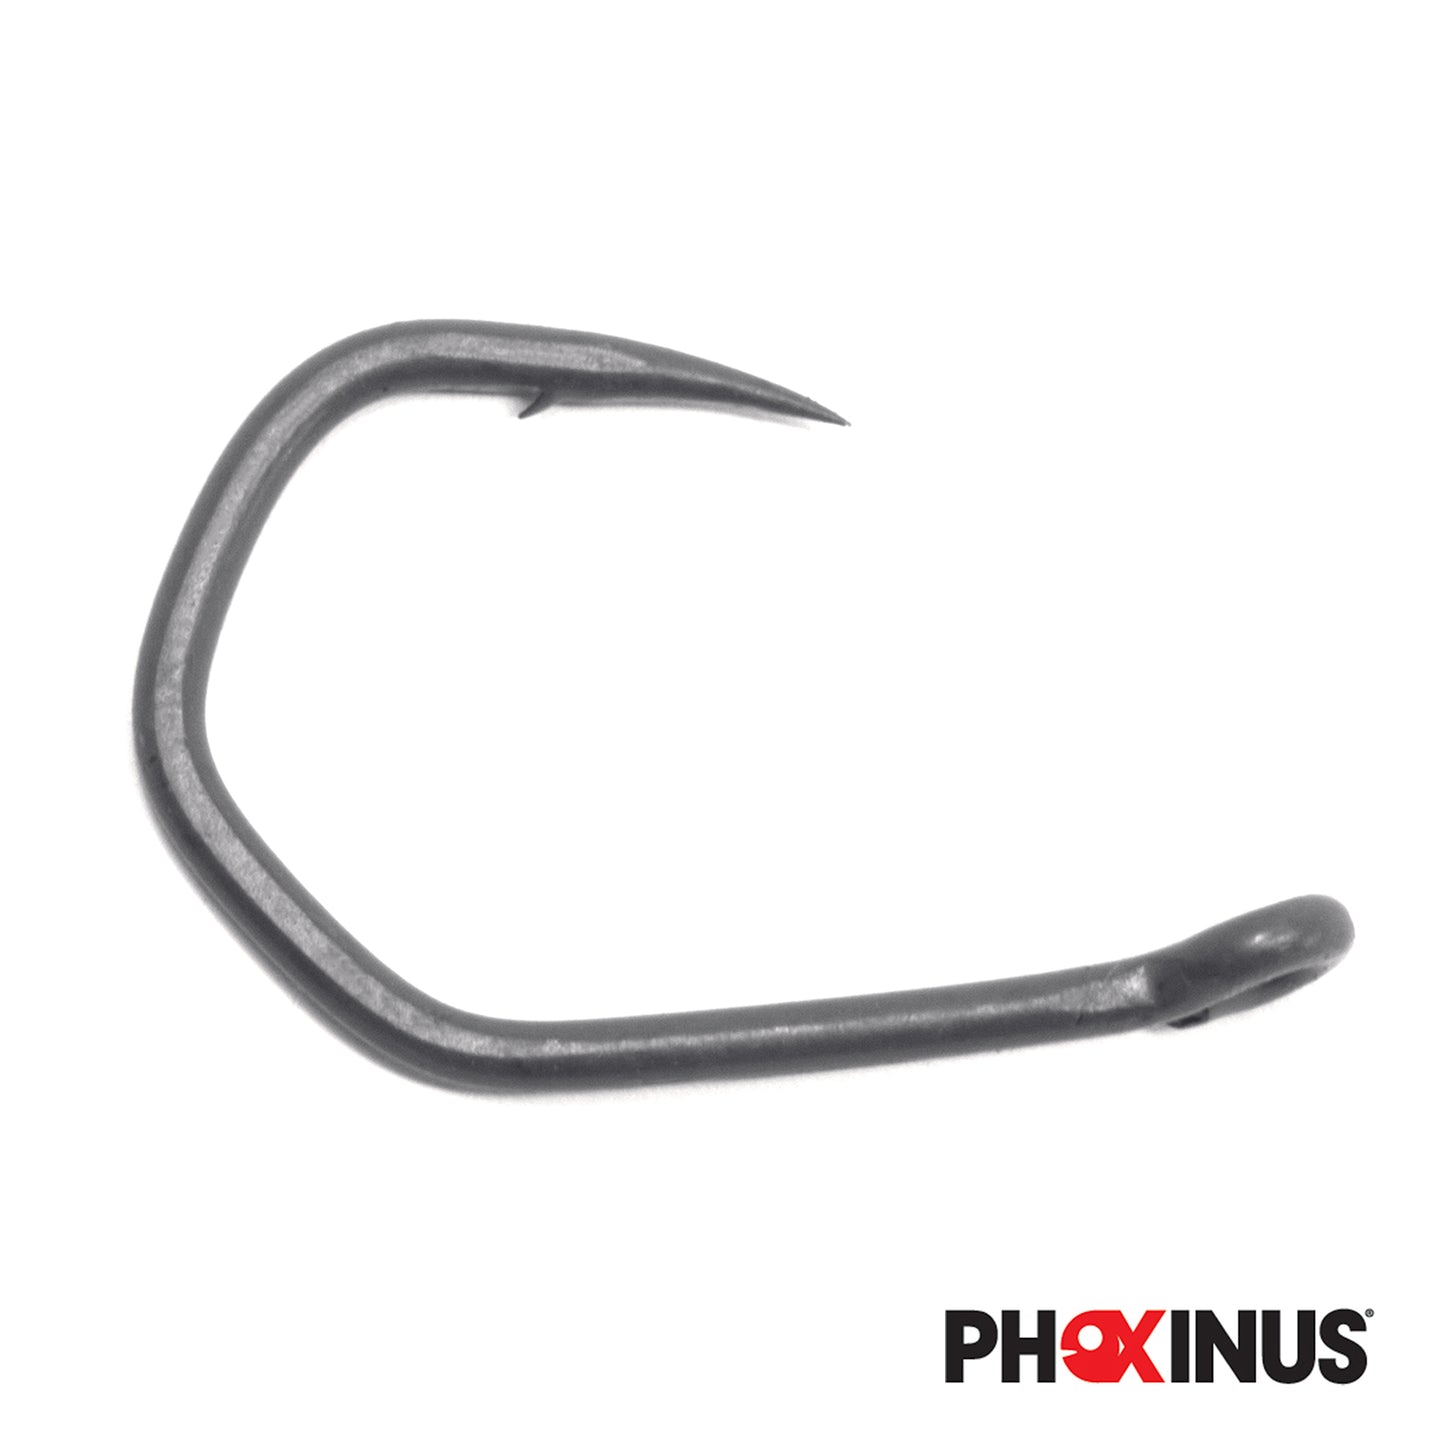 Phoxinus Katana Claw Hooks - Teflon coated carp hooks for big fish